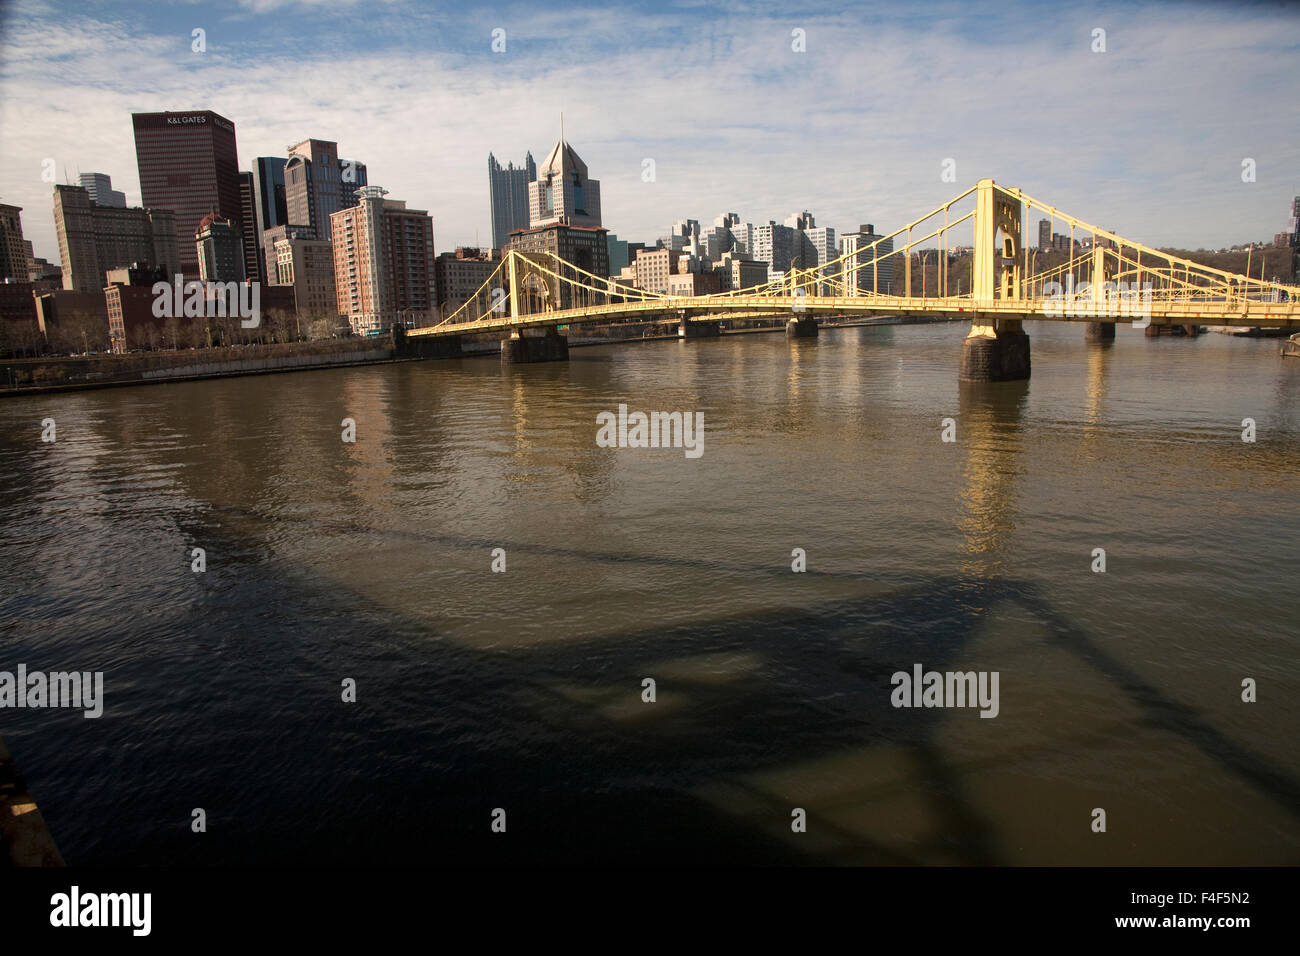 Tutti i ponti sul fiume Allegheny conducono al cuore di Pittsburgh il centro finanziario del centro citta'. Foto Stock